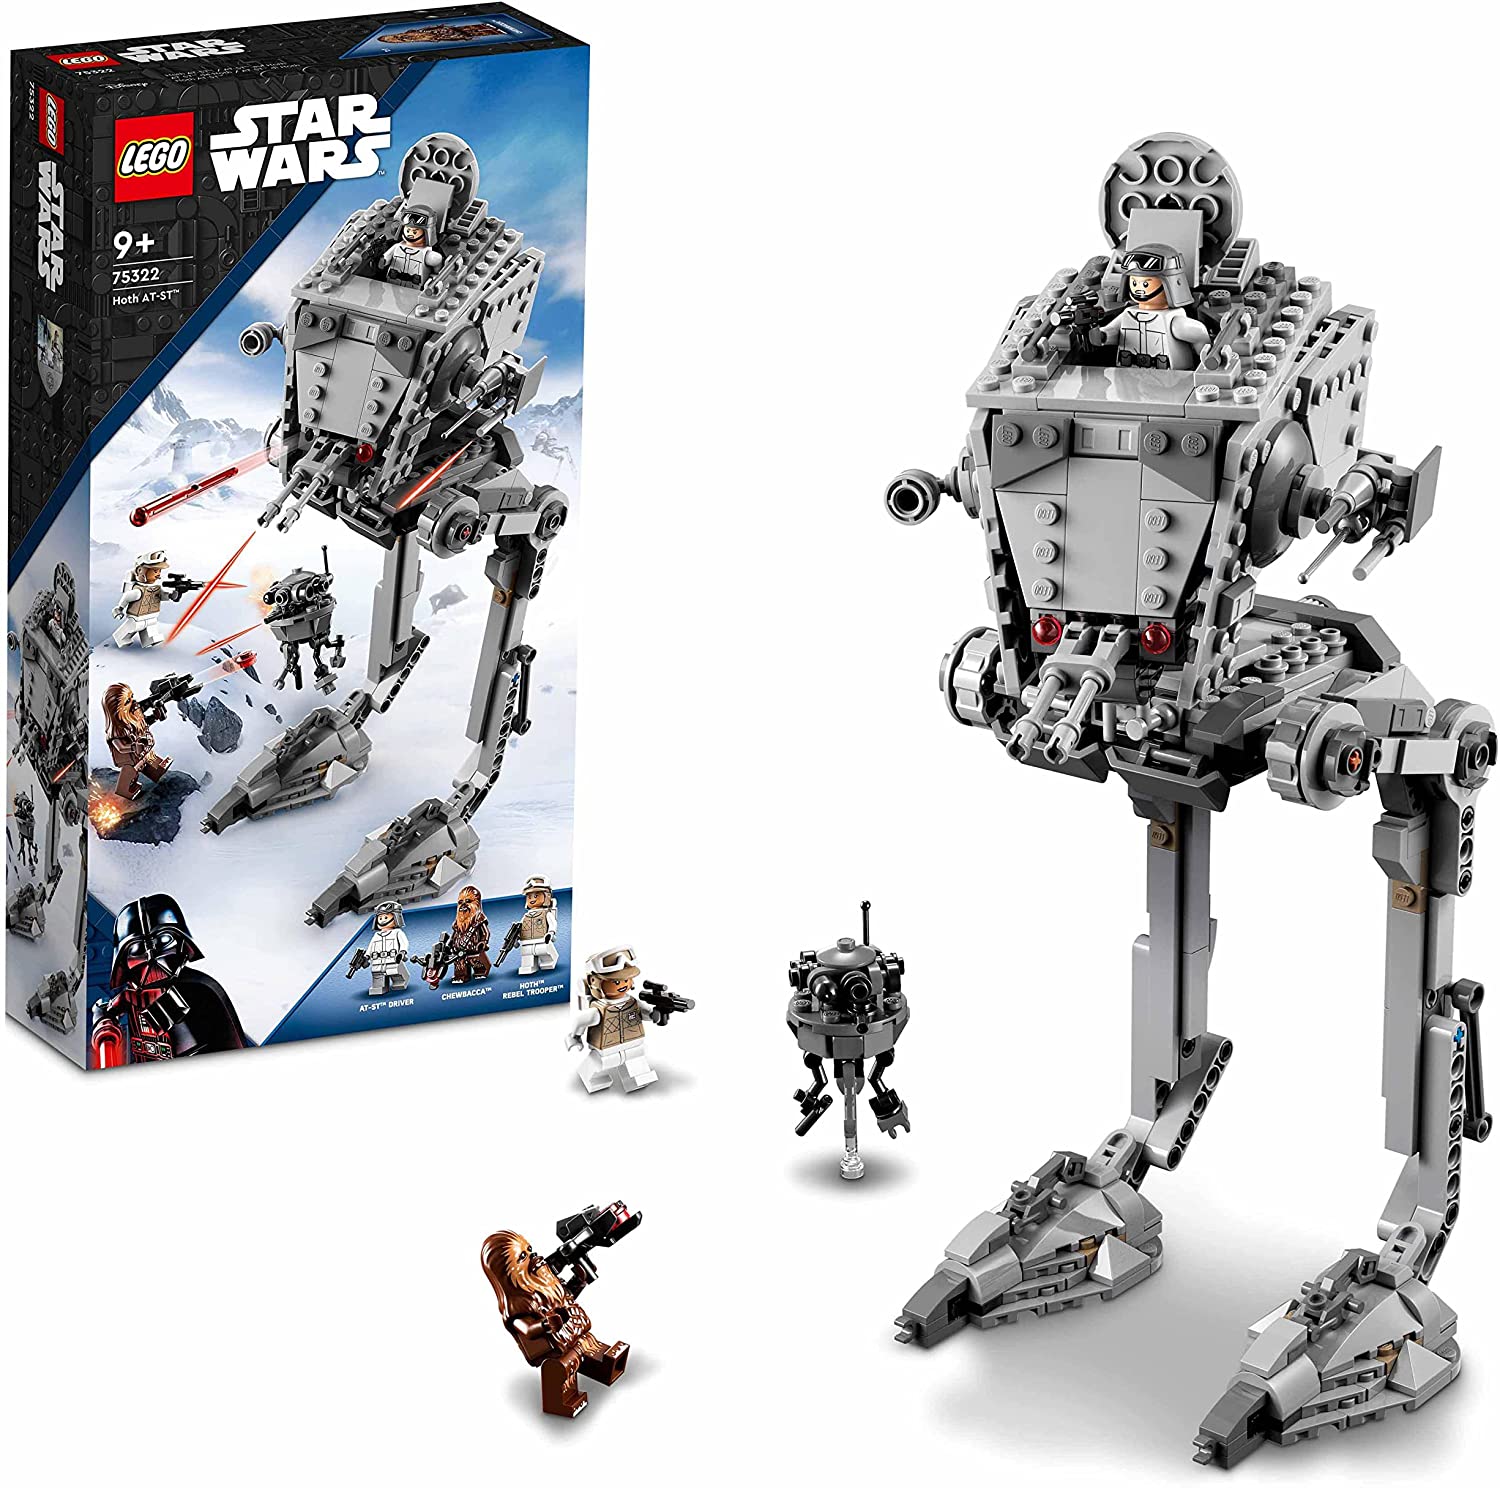 Bild zu Lego Star Wars AT-ST auf Hoth (75322) für 31,59€ (Vergleich: 37,58€)